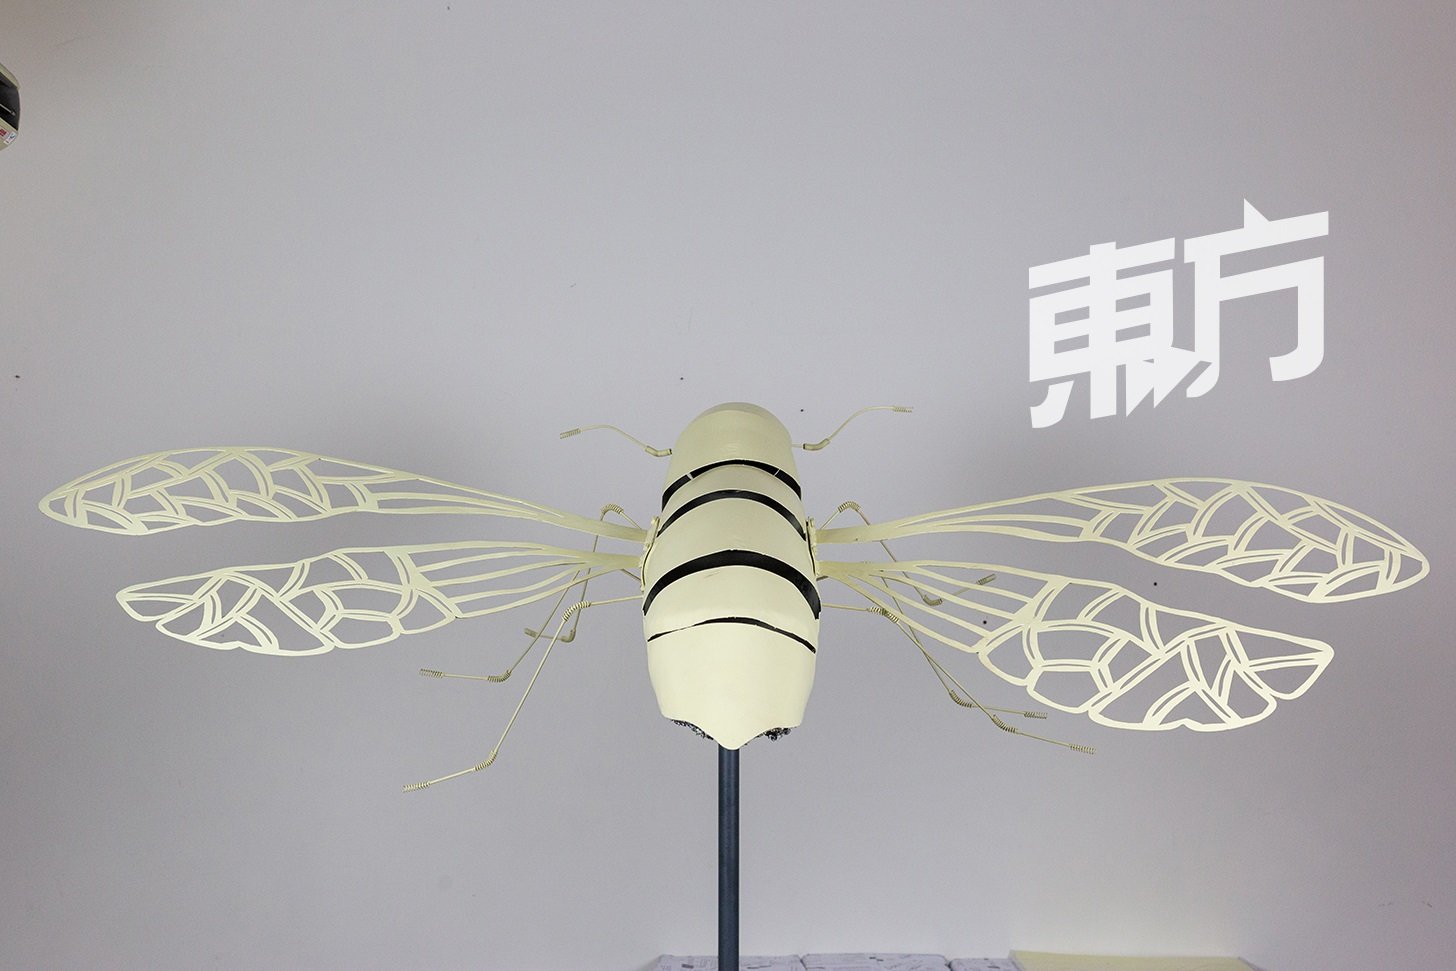 洁希丽除了放大视觉效果，还模拟蜜蜂翅膀震动的声音，让人们在观赏装置艺术时也能有听觉感官上的感受。